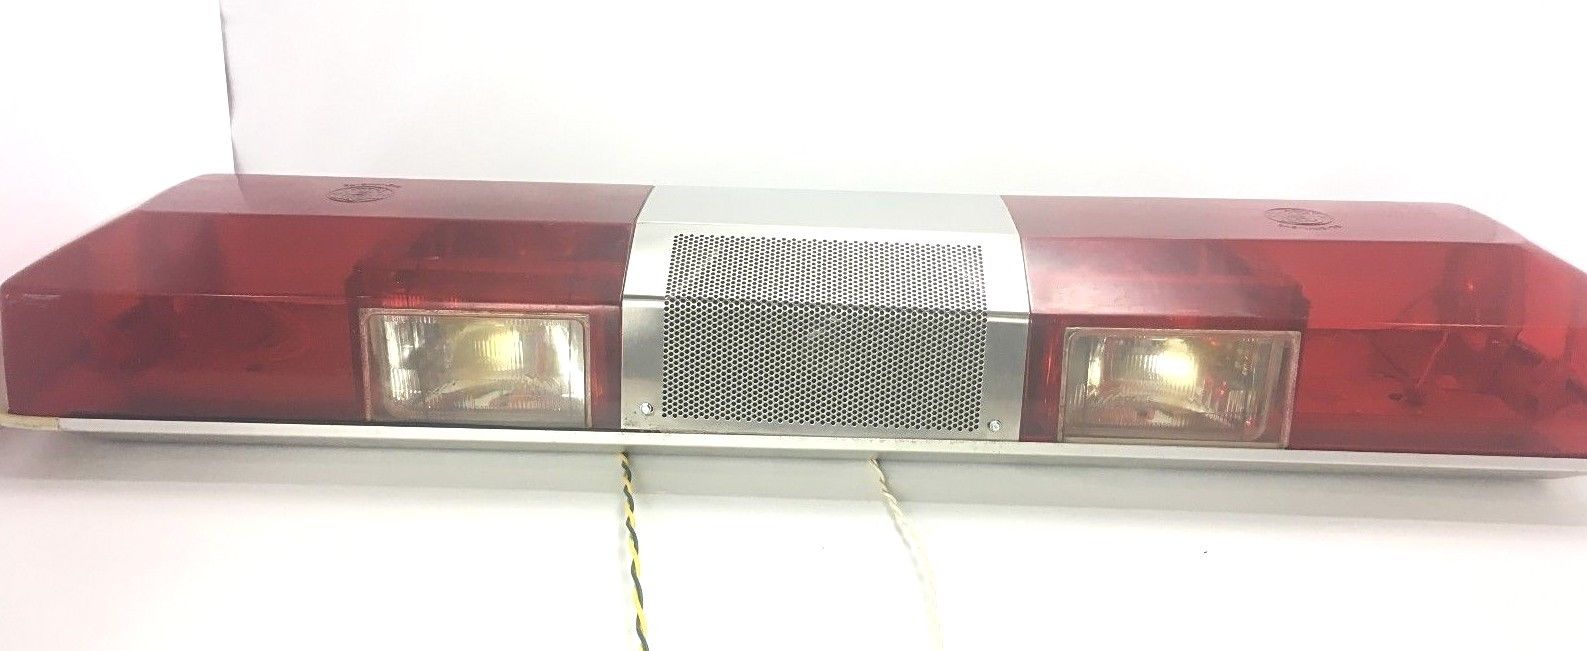 Vtg S&W 80's Roof Mount Fire Police EMS Emergency Flashing Light Siren Bar 48